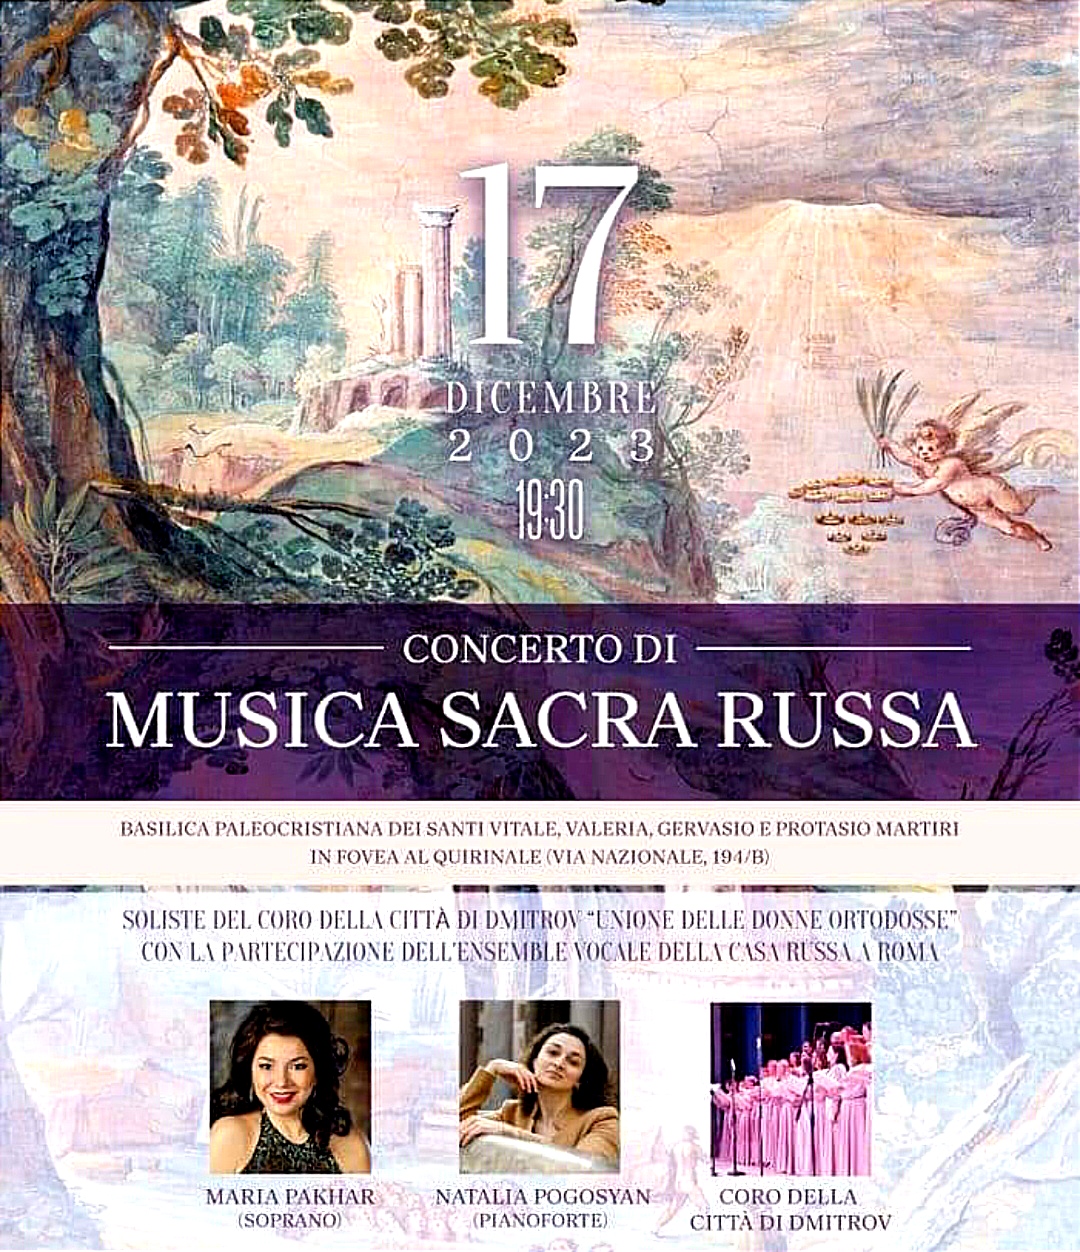 Concerto di sacra musica russa a Roma